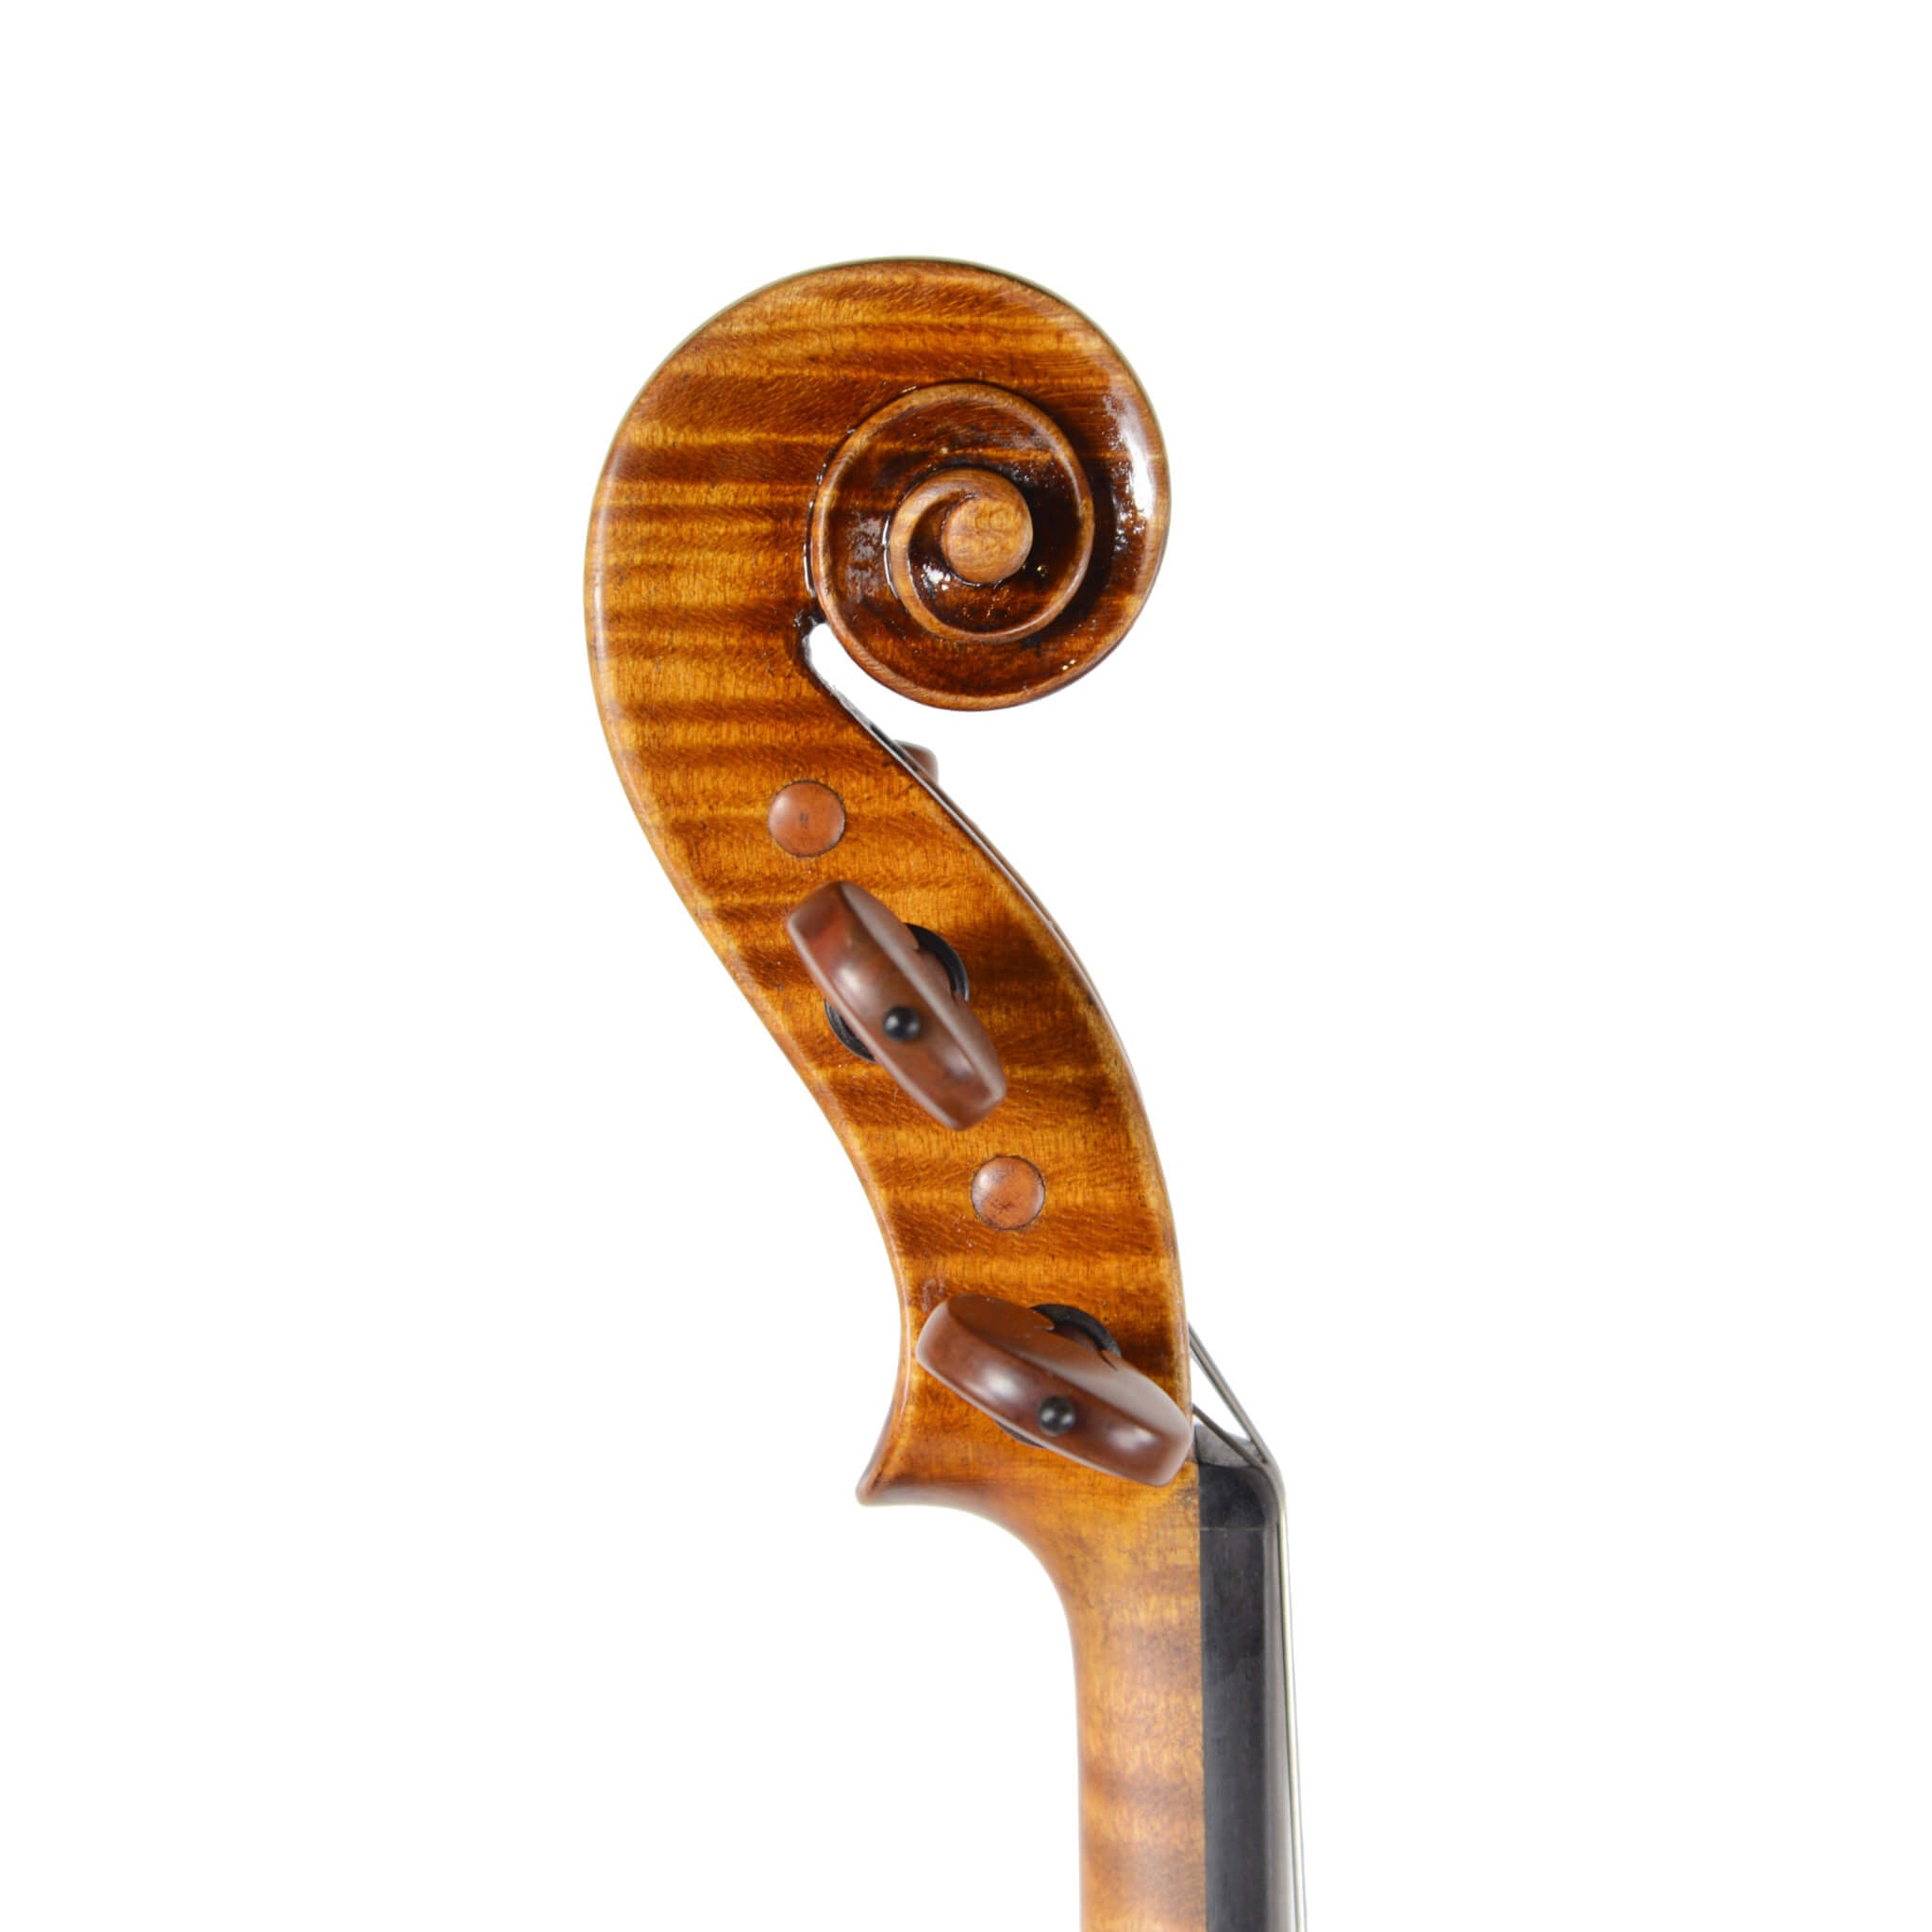 Scott Cao Signature Series Violin